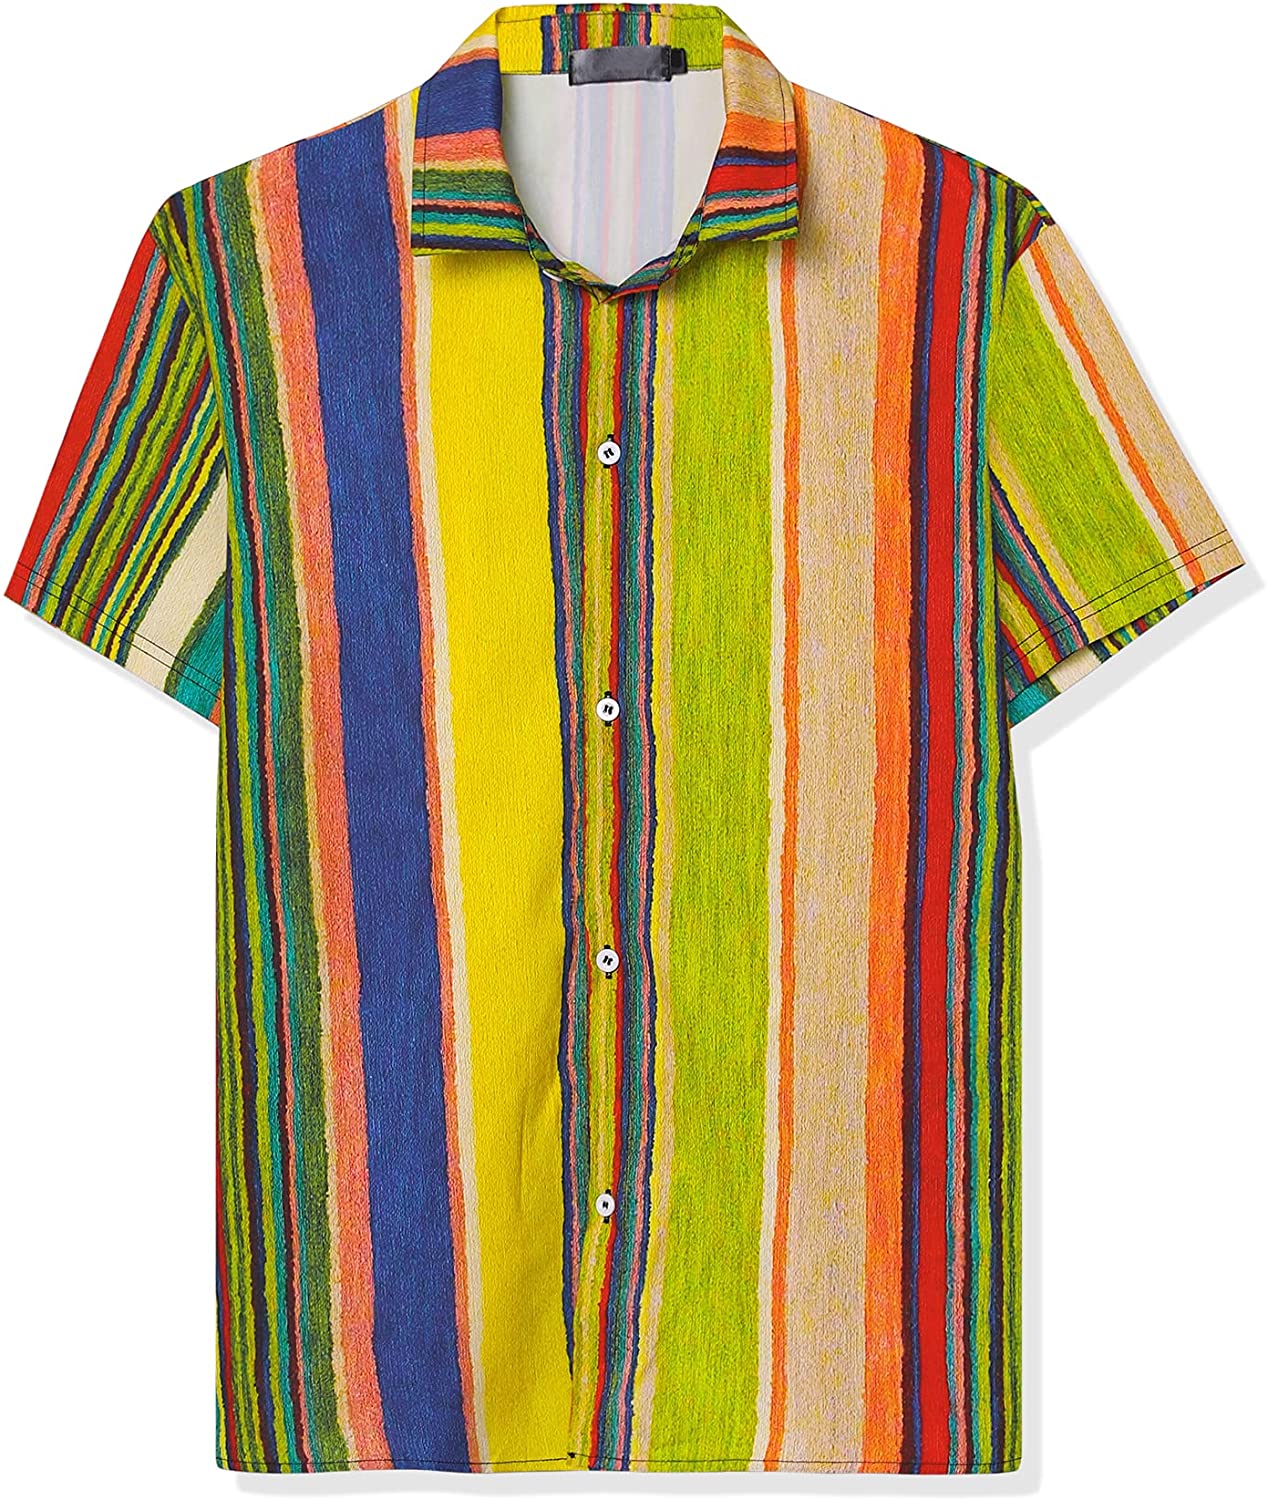 Lars Amadeus Men's Vertical Striped Shirt Short Sleeve Button Down